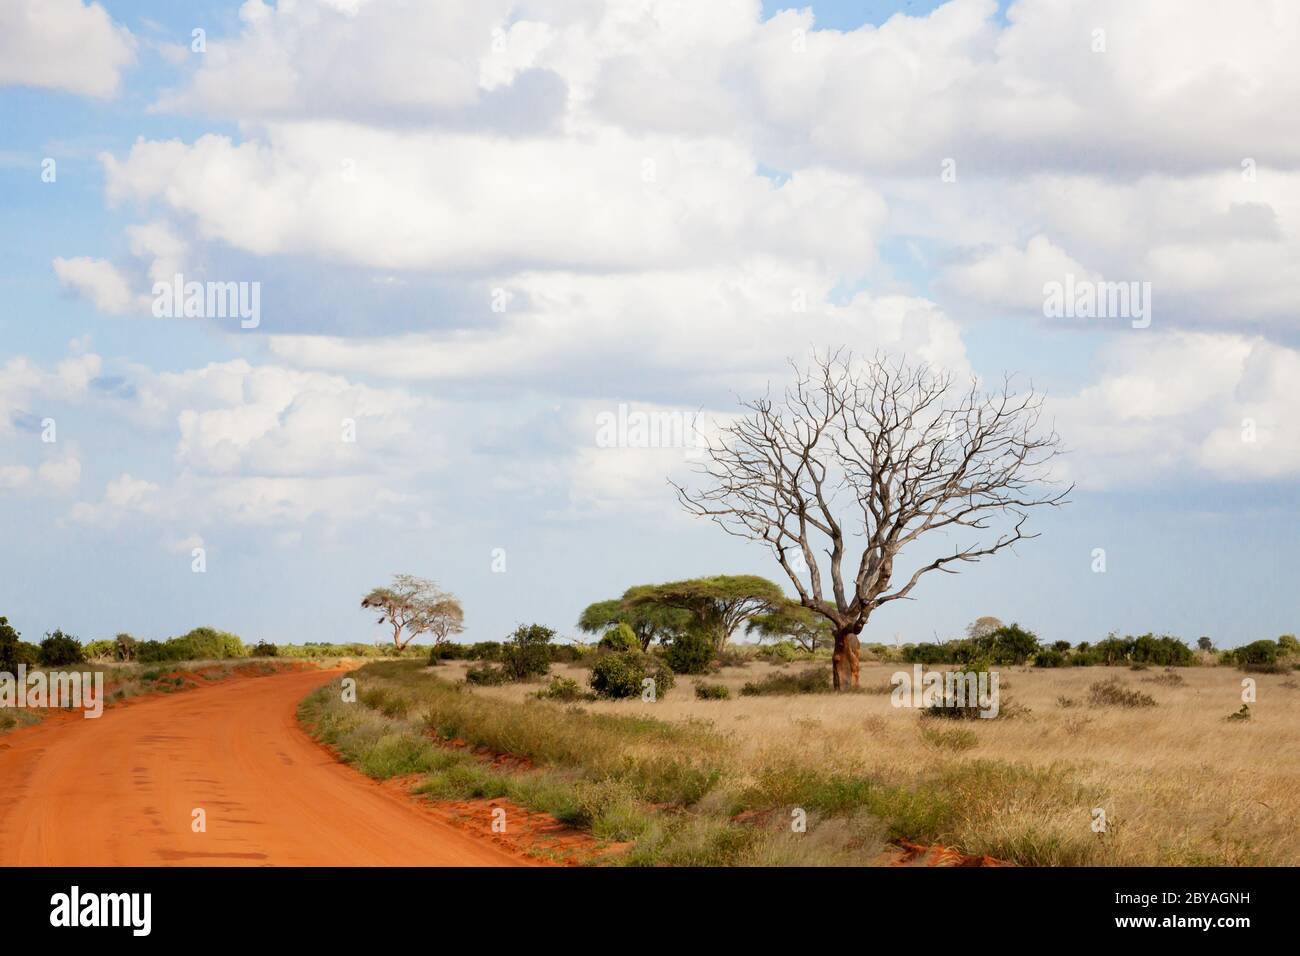 Un camino con suelo rojo a través de la sabana con muchos árboles y plantas verdes Foto de stock